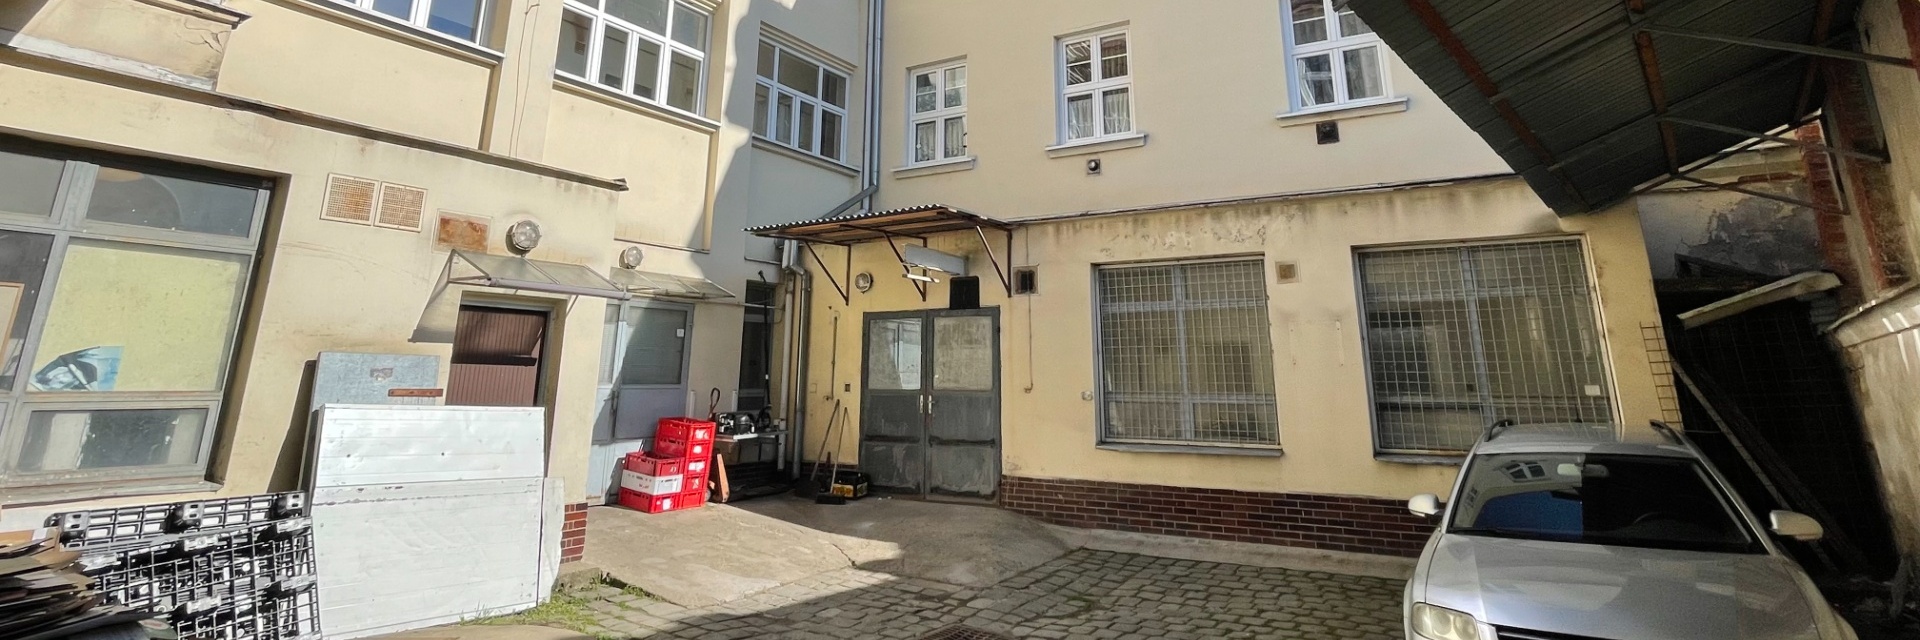 Prodej činžovního domu 1415 m² - Brno - Obřany